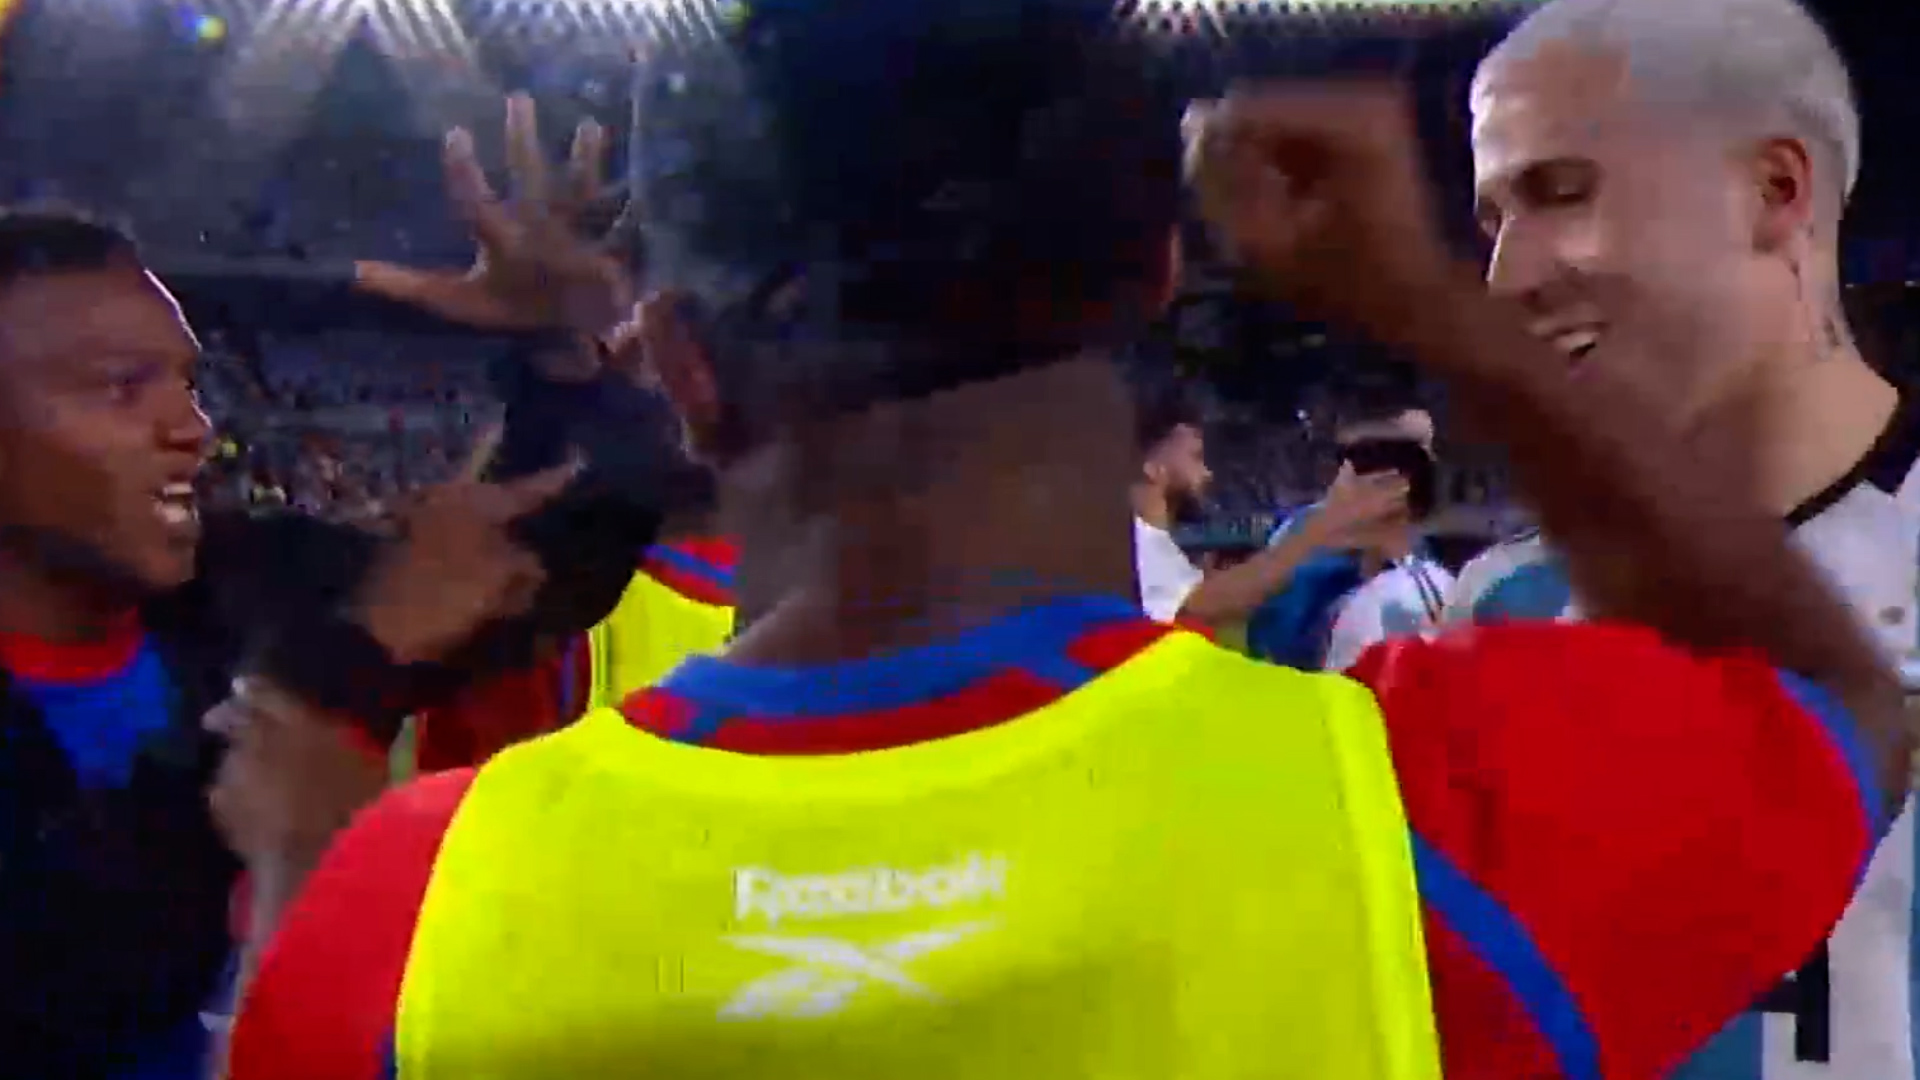 La locura de los panameños por un recuerdo de los campeones mundiales: el “piedra, papel o tijera” por la camiseta de Enzo Fernández y el autógrafo de Messi